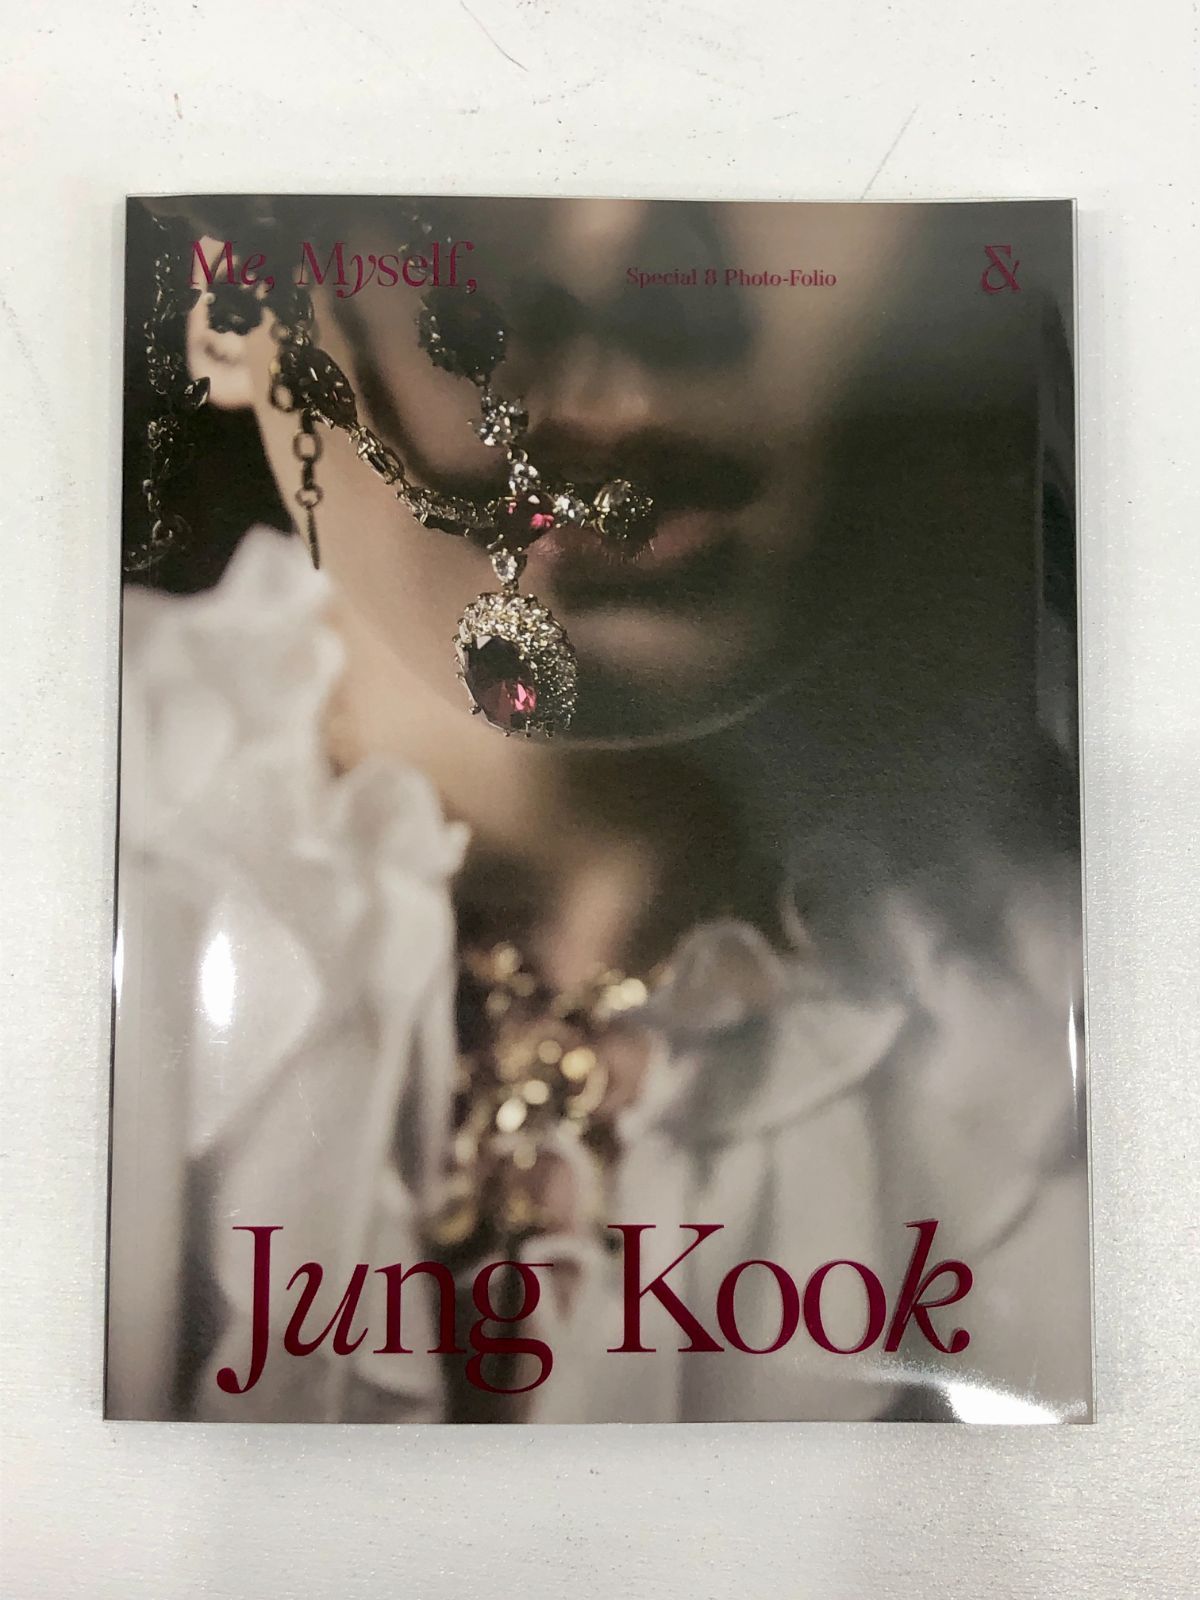 小牧店】BTS Special 8 Photo-Folio Me Myself Jung Kook ジョングク 